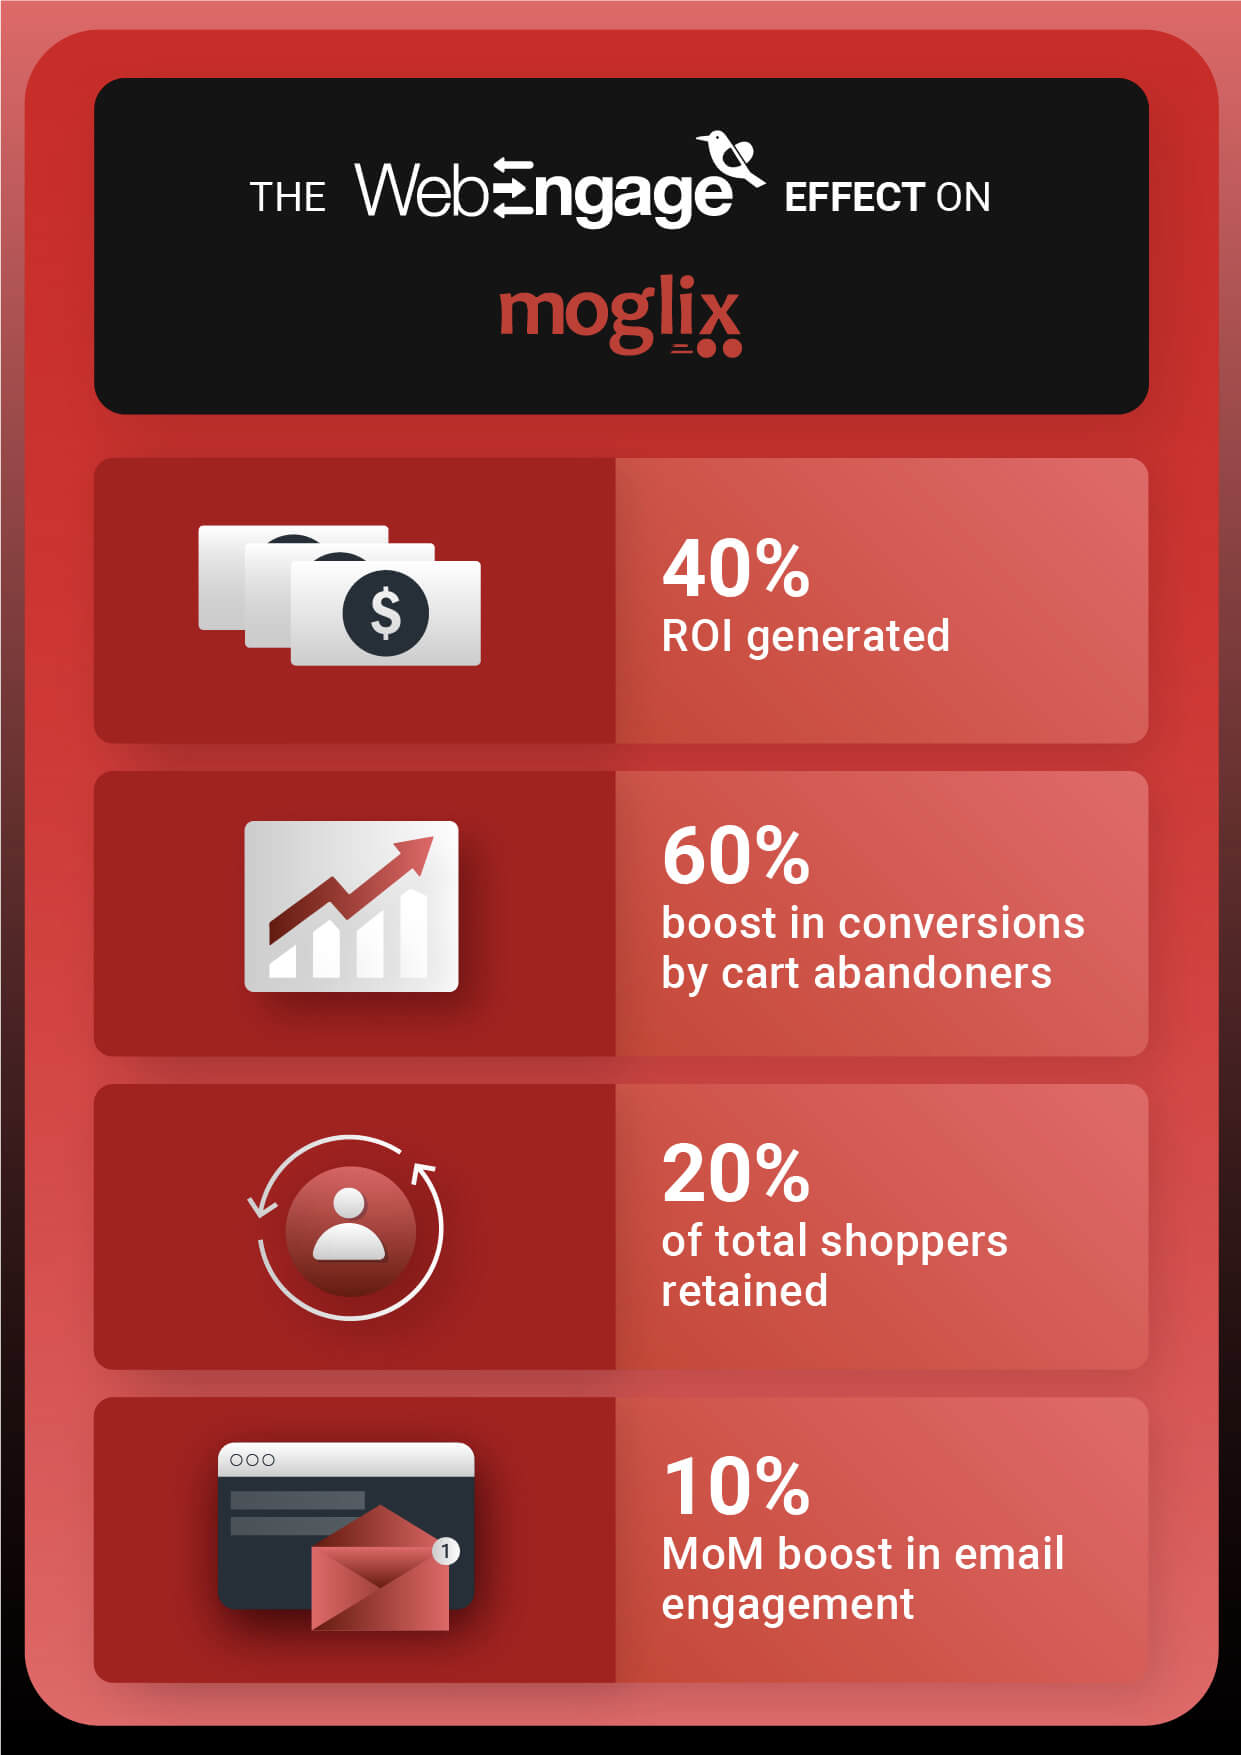 The WebEngage effect on Moglix